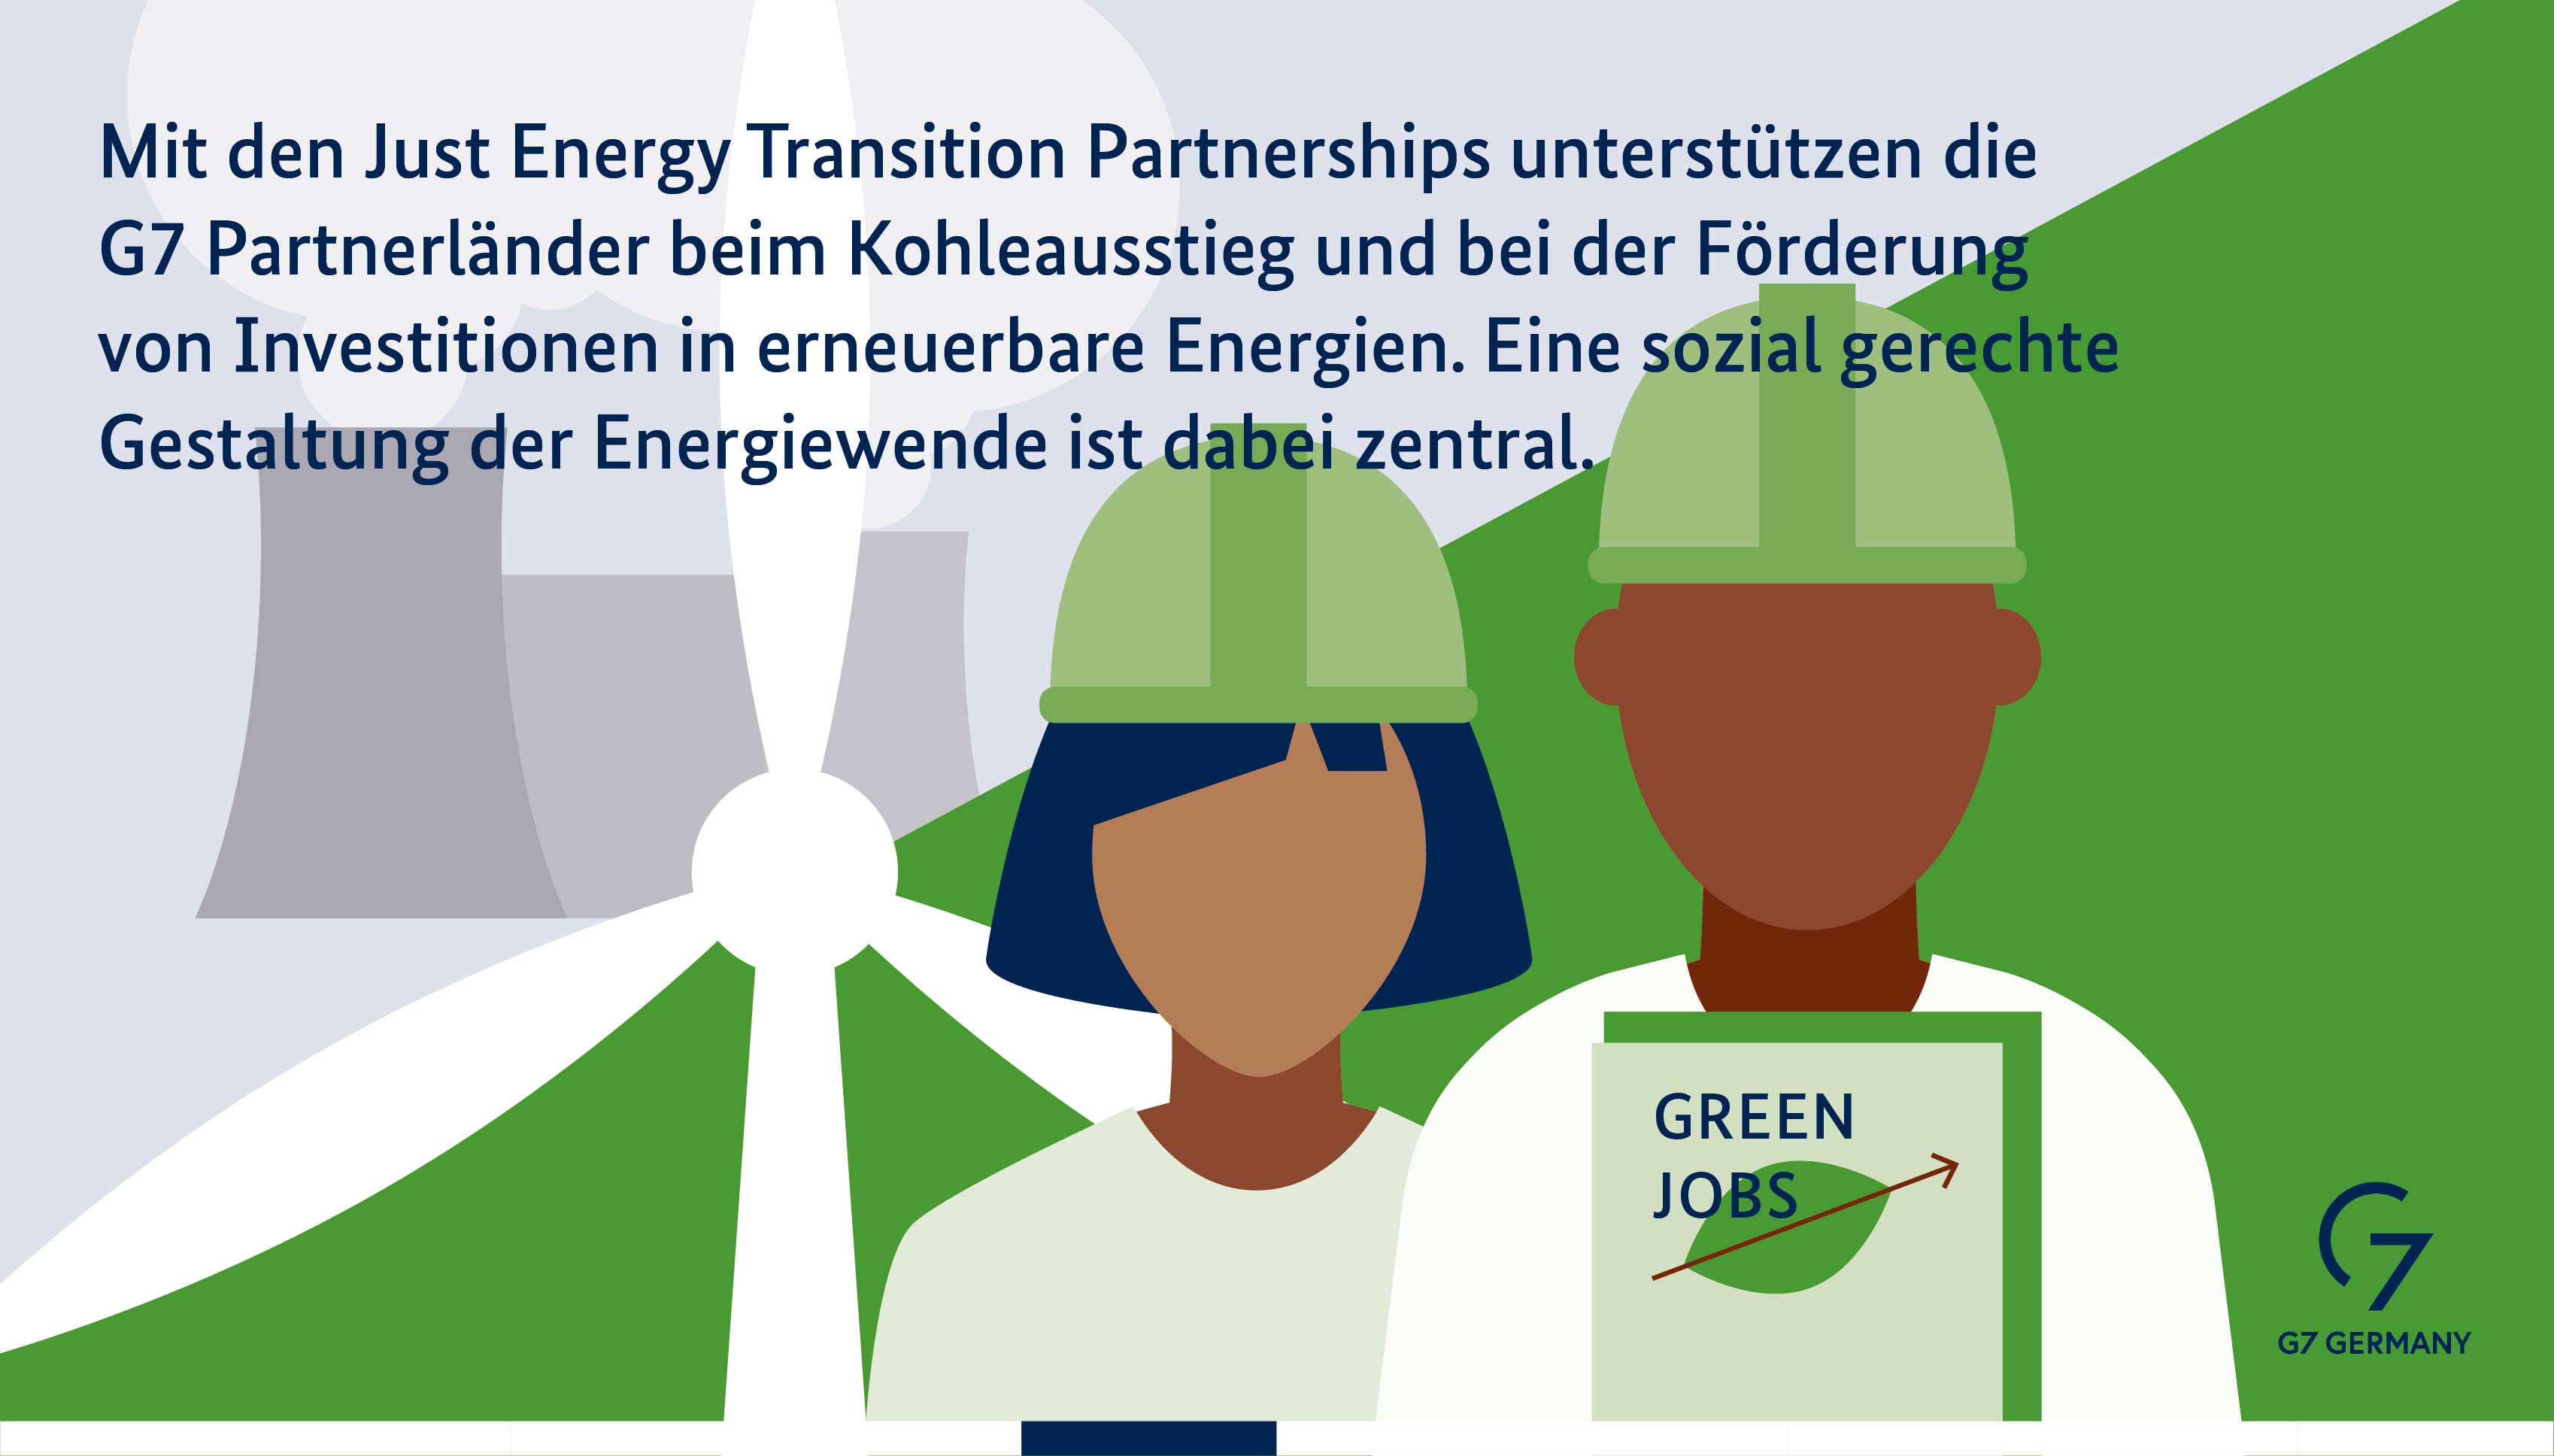 Mit den Just Energy Transition Partnerships unterstützt die G7 Partnerländer beim Kohleausstieg und bei der Förderung von Investitionen in erneuerbare Energien. Eine sozial gerechte Gestaltung der Energiewende ist dabei zentral.